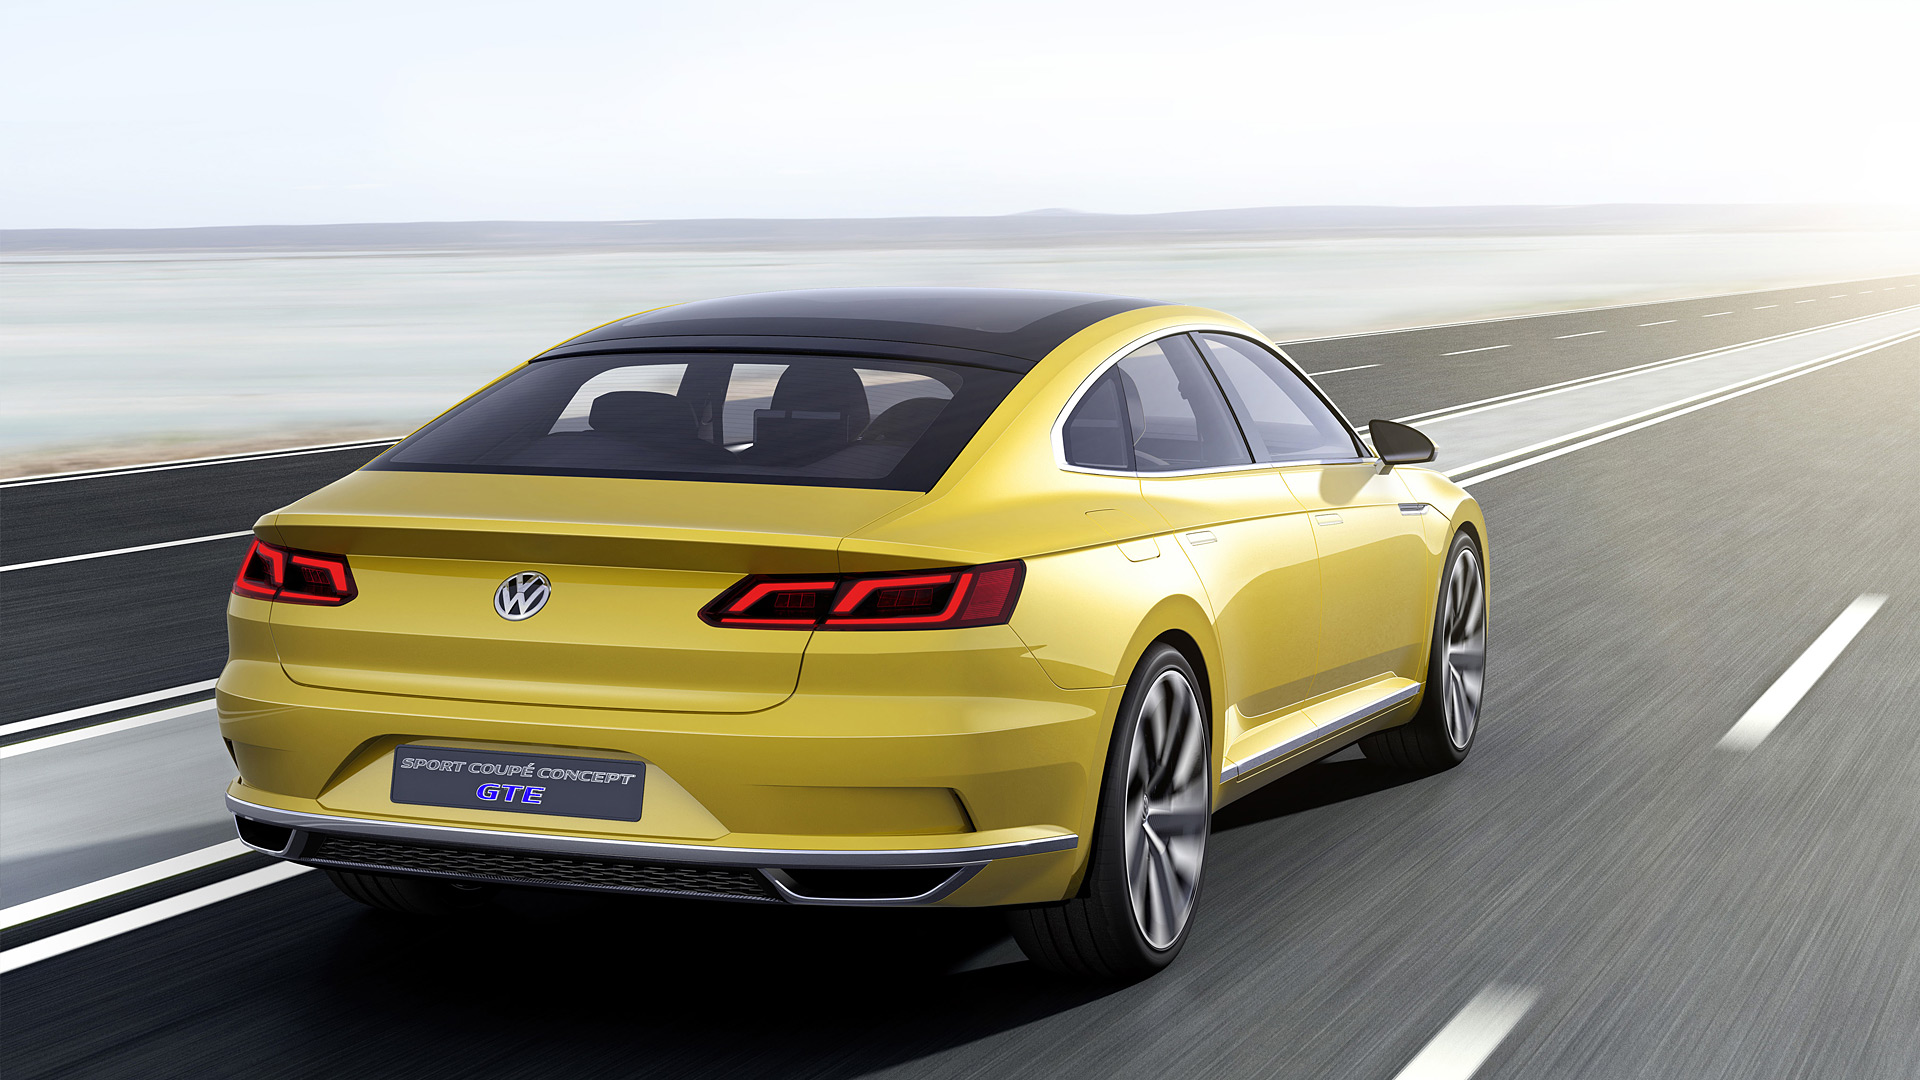  2015 Volkswagen Sport Coupe GTE Concept Wallpaper.